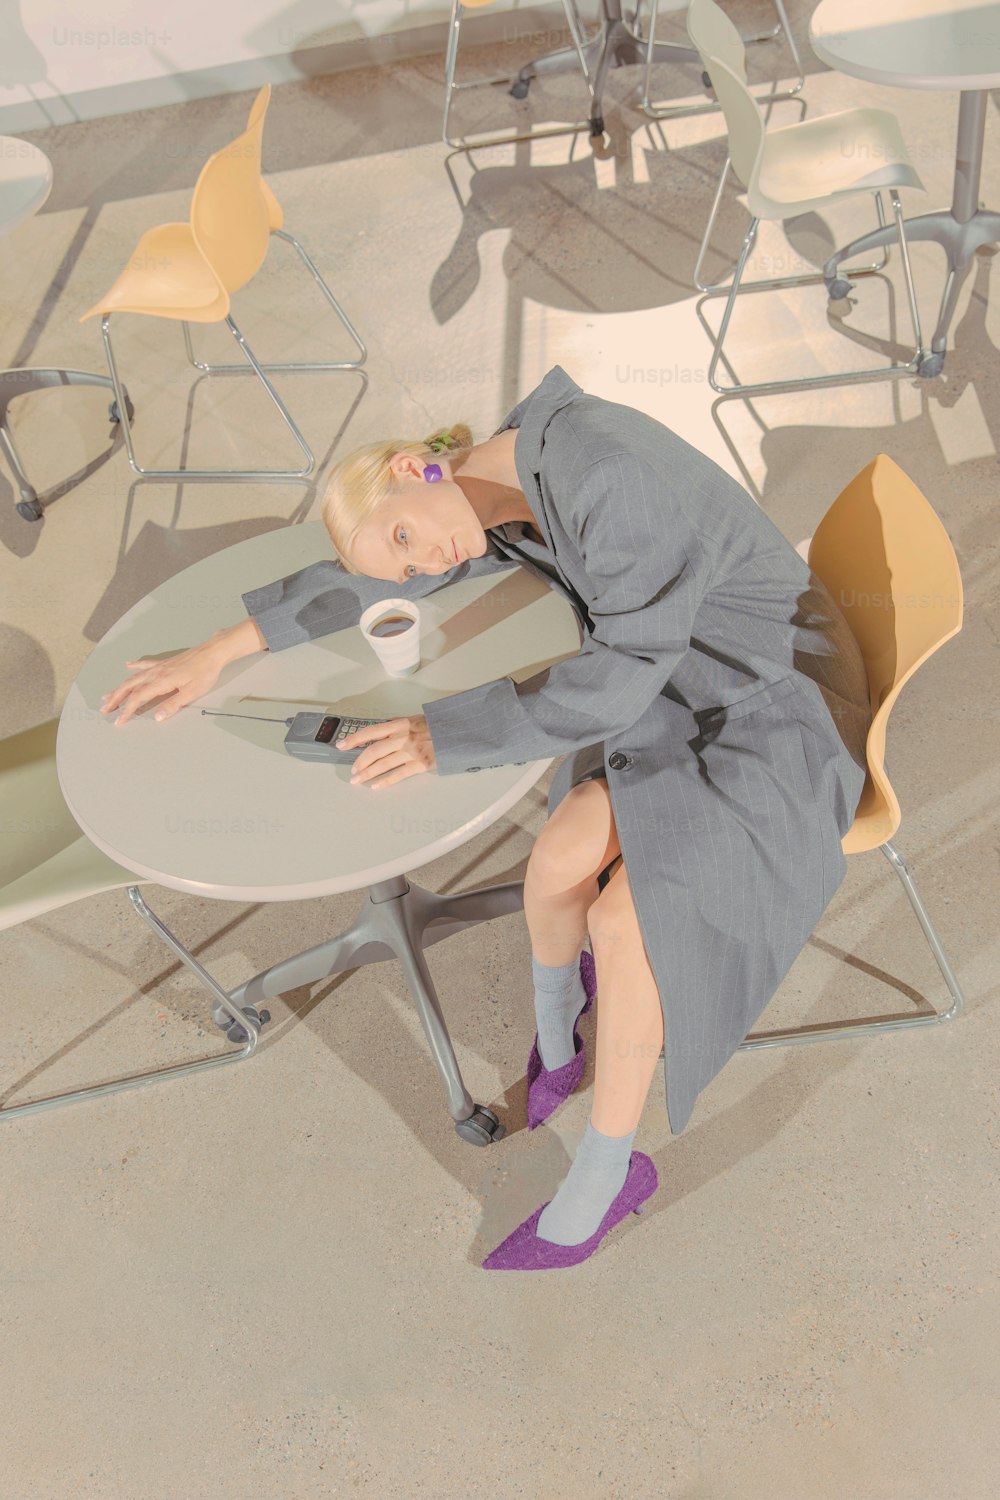 uma mulher sentada em uma mesa com uma xícara de café